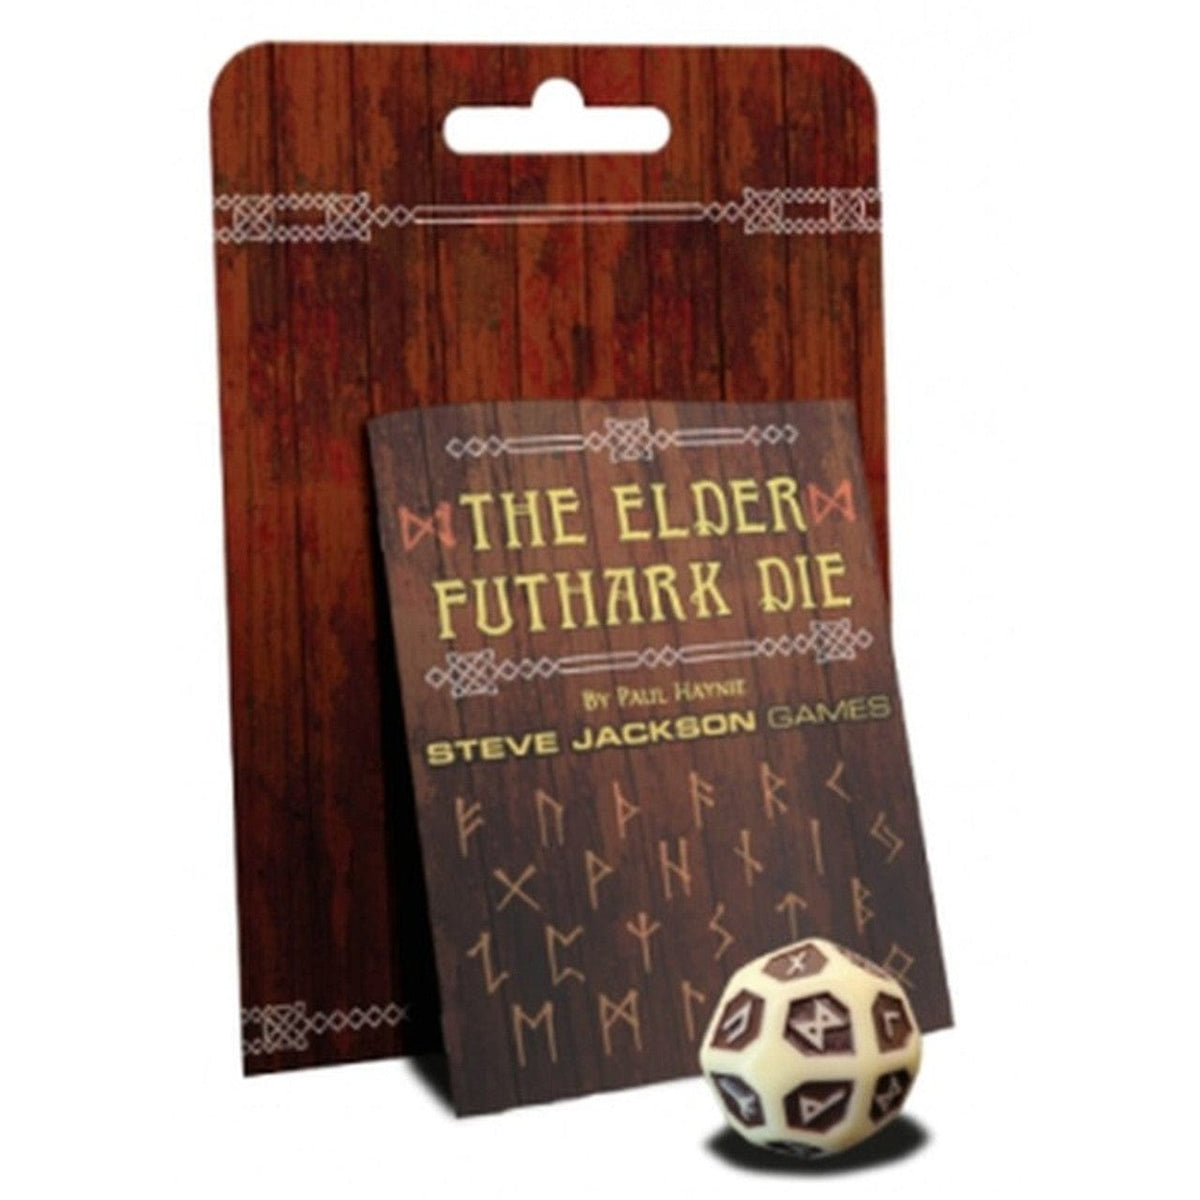 The Elder Futhark Die - Third Eye